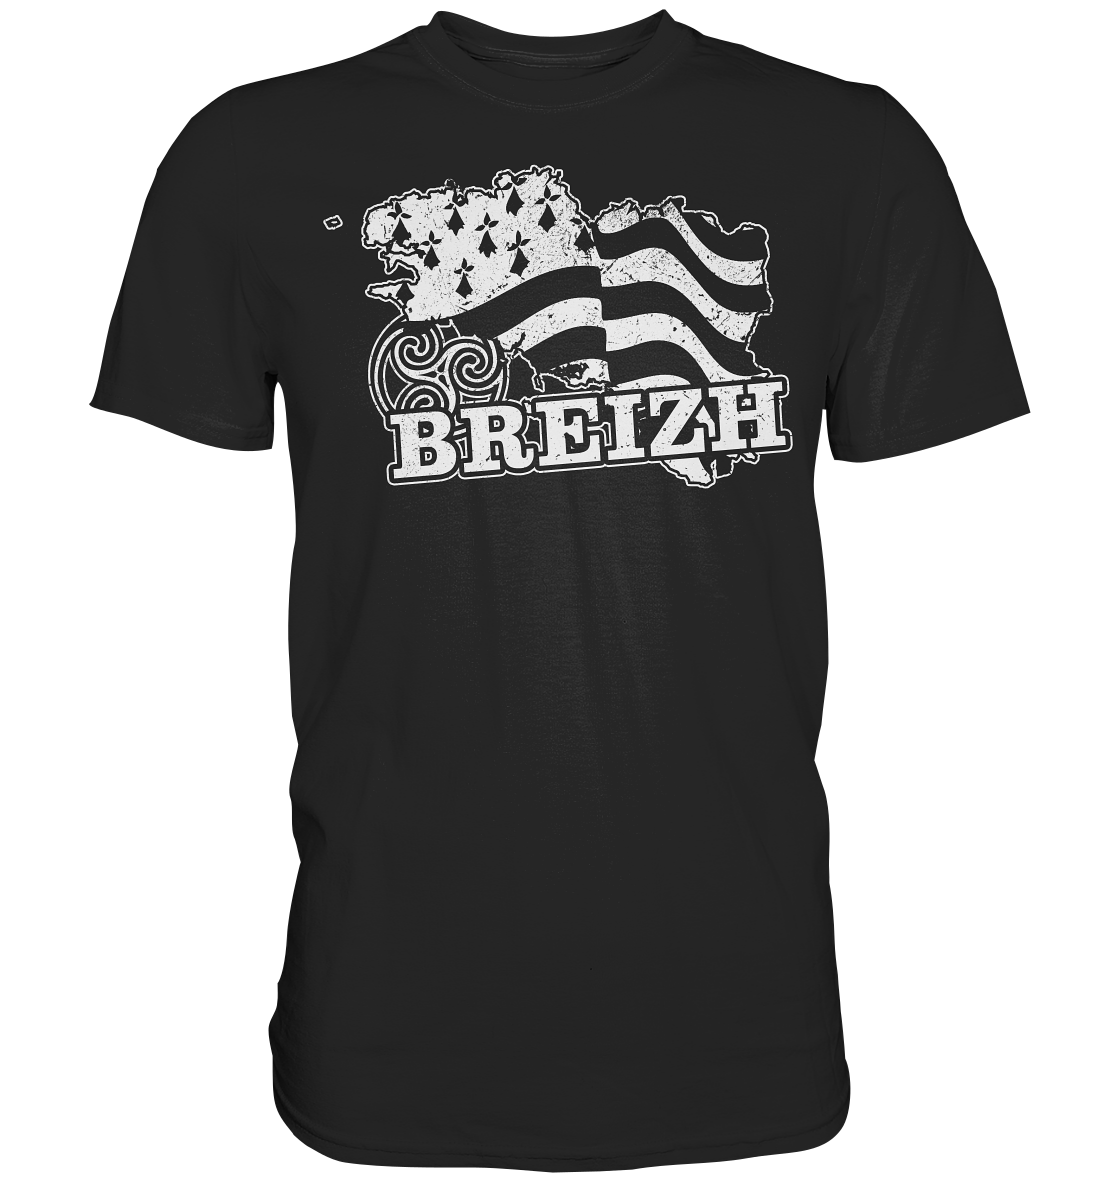 Celtic Nation "Brittany / Breizh" - Premium Shirt